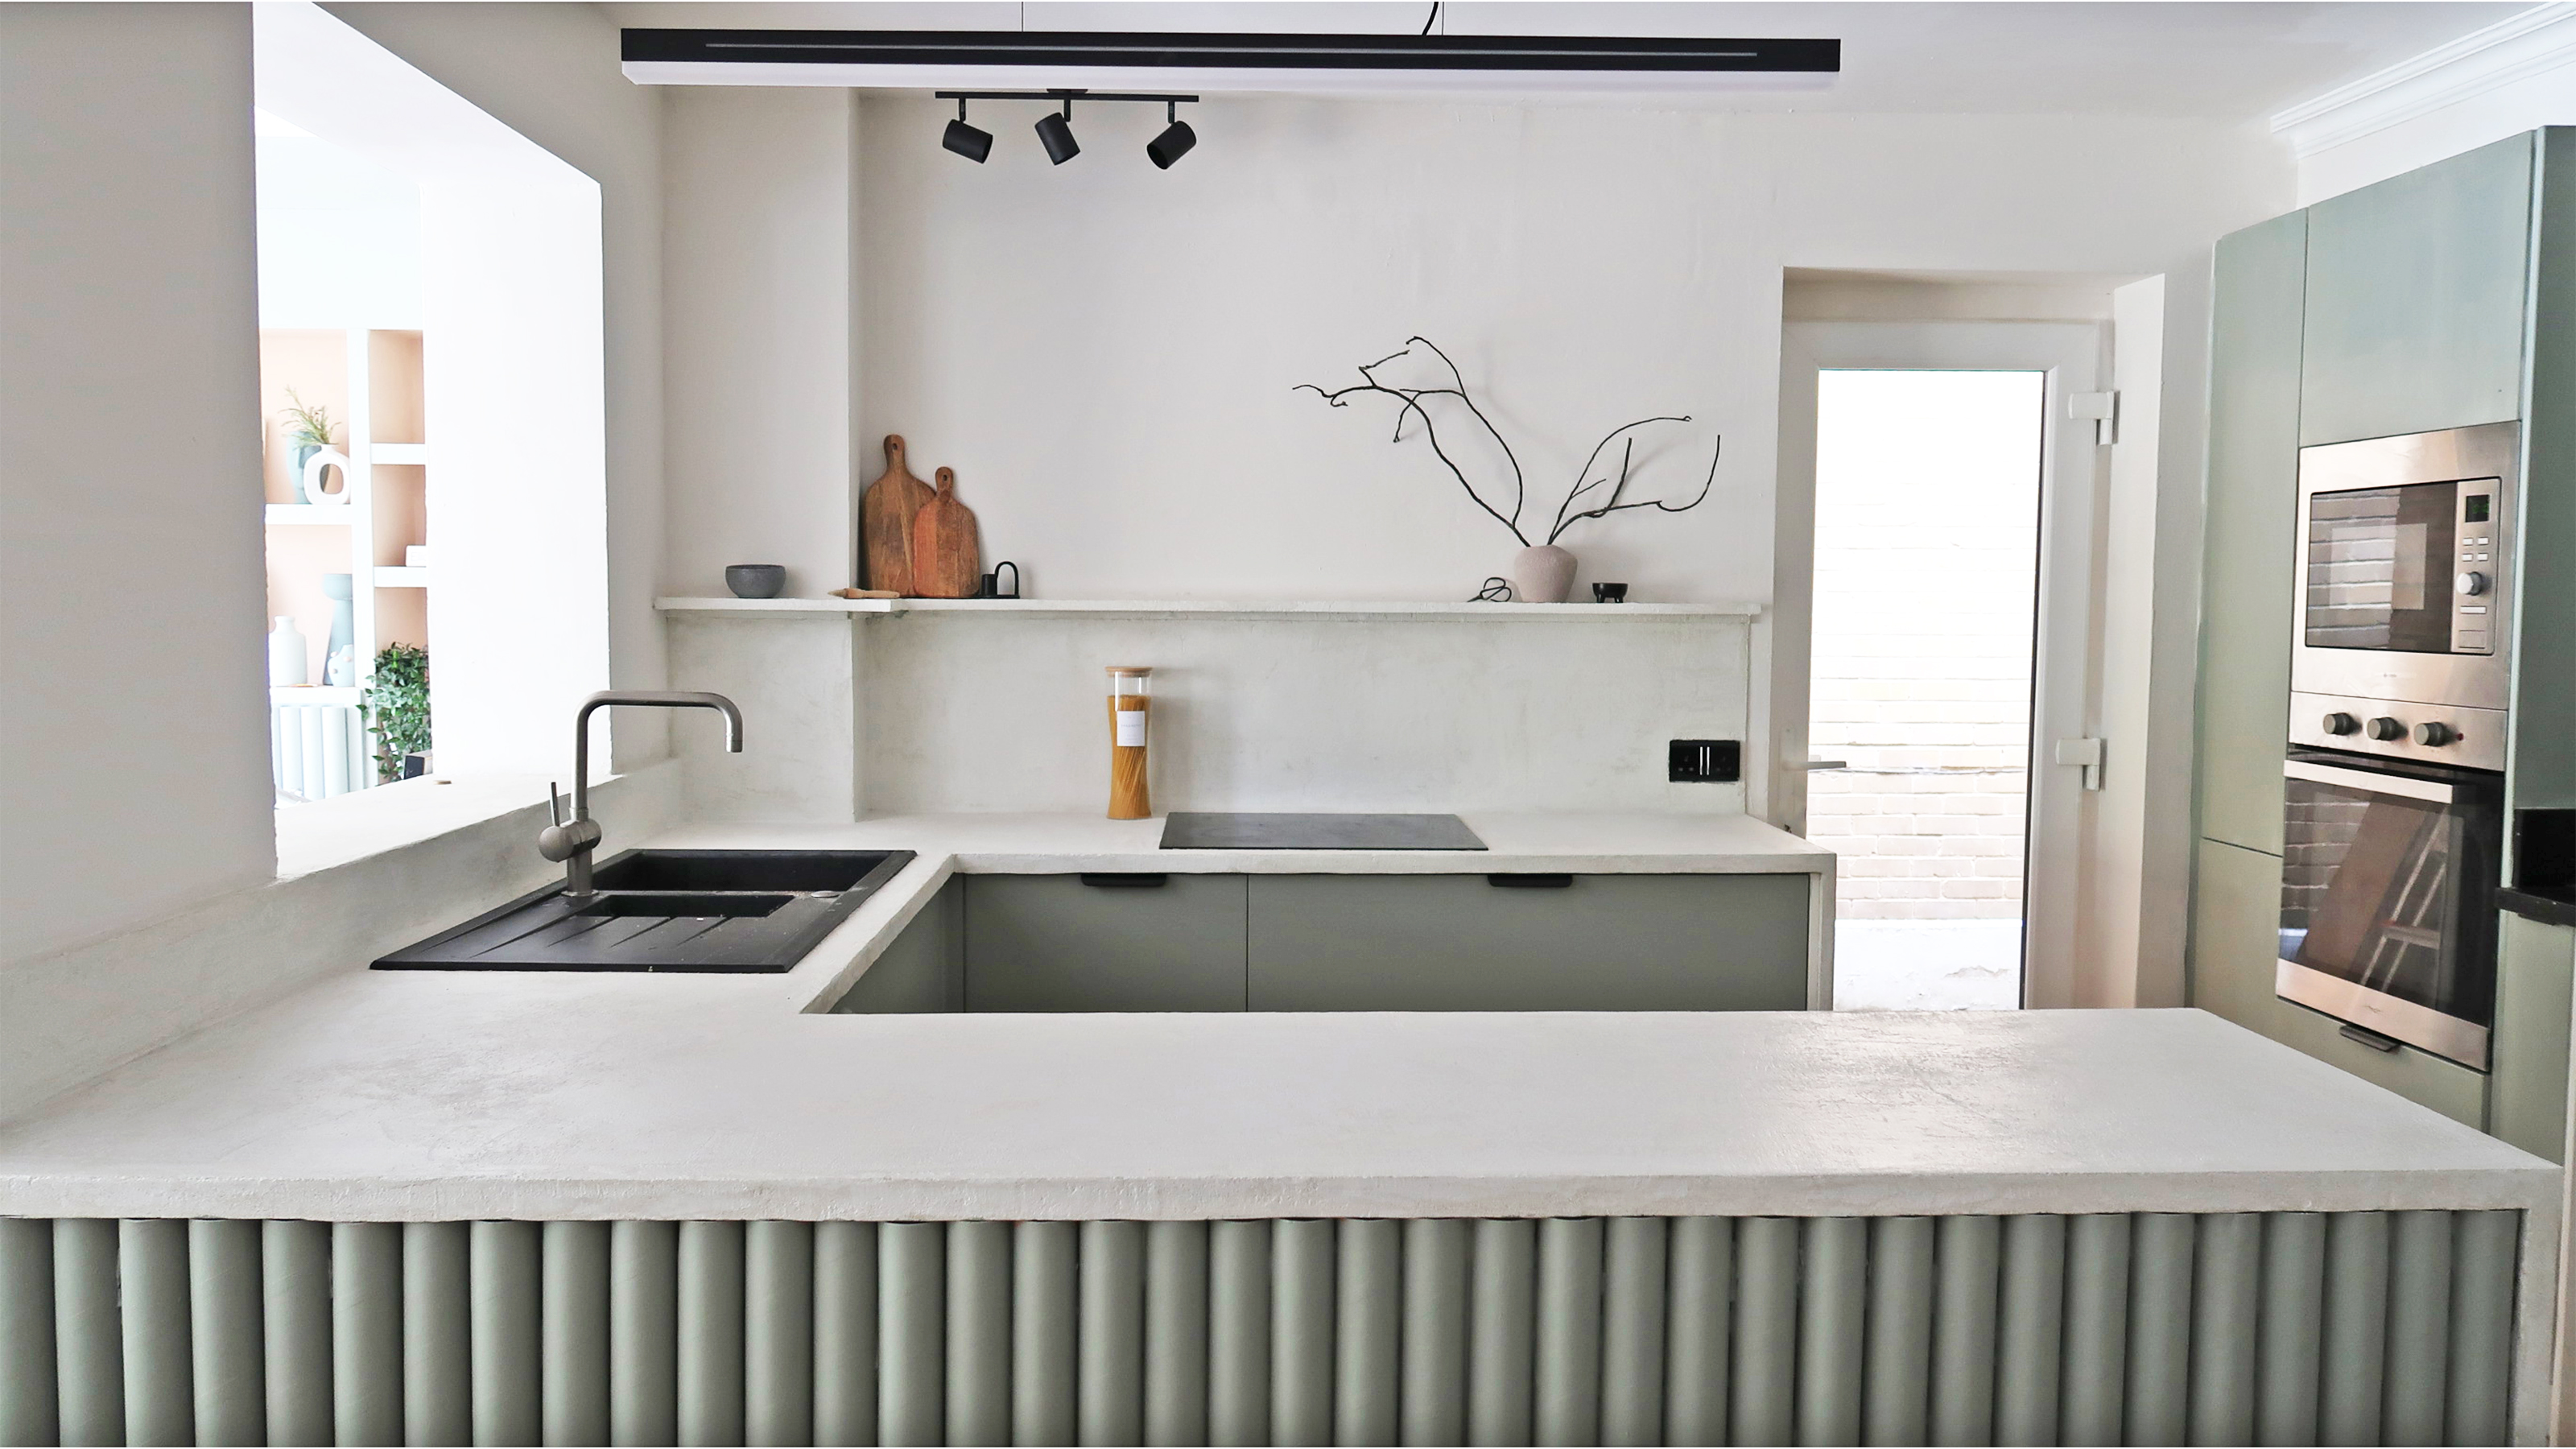 tiltrækkende indarbejde komponist How to microcement kitchen worktops: A seriously cool upgrade | Real Homes